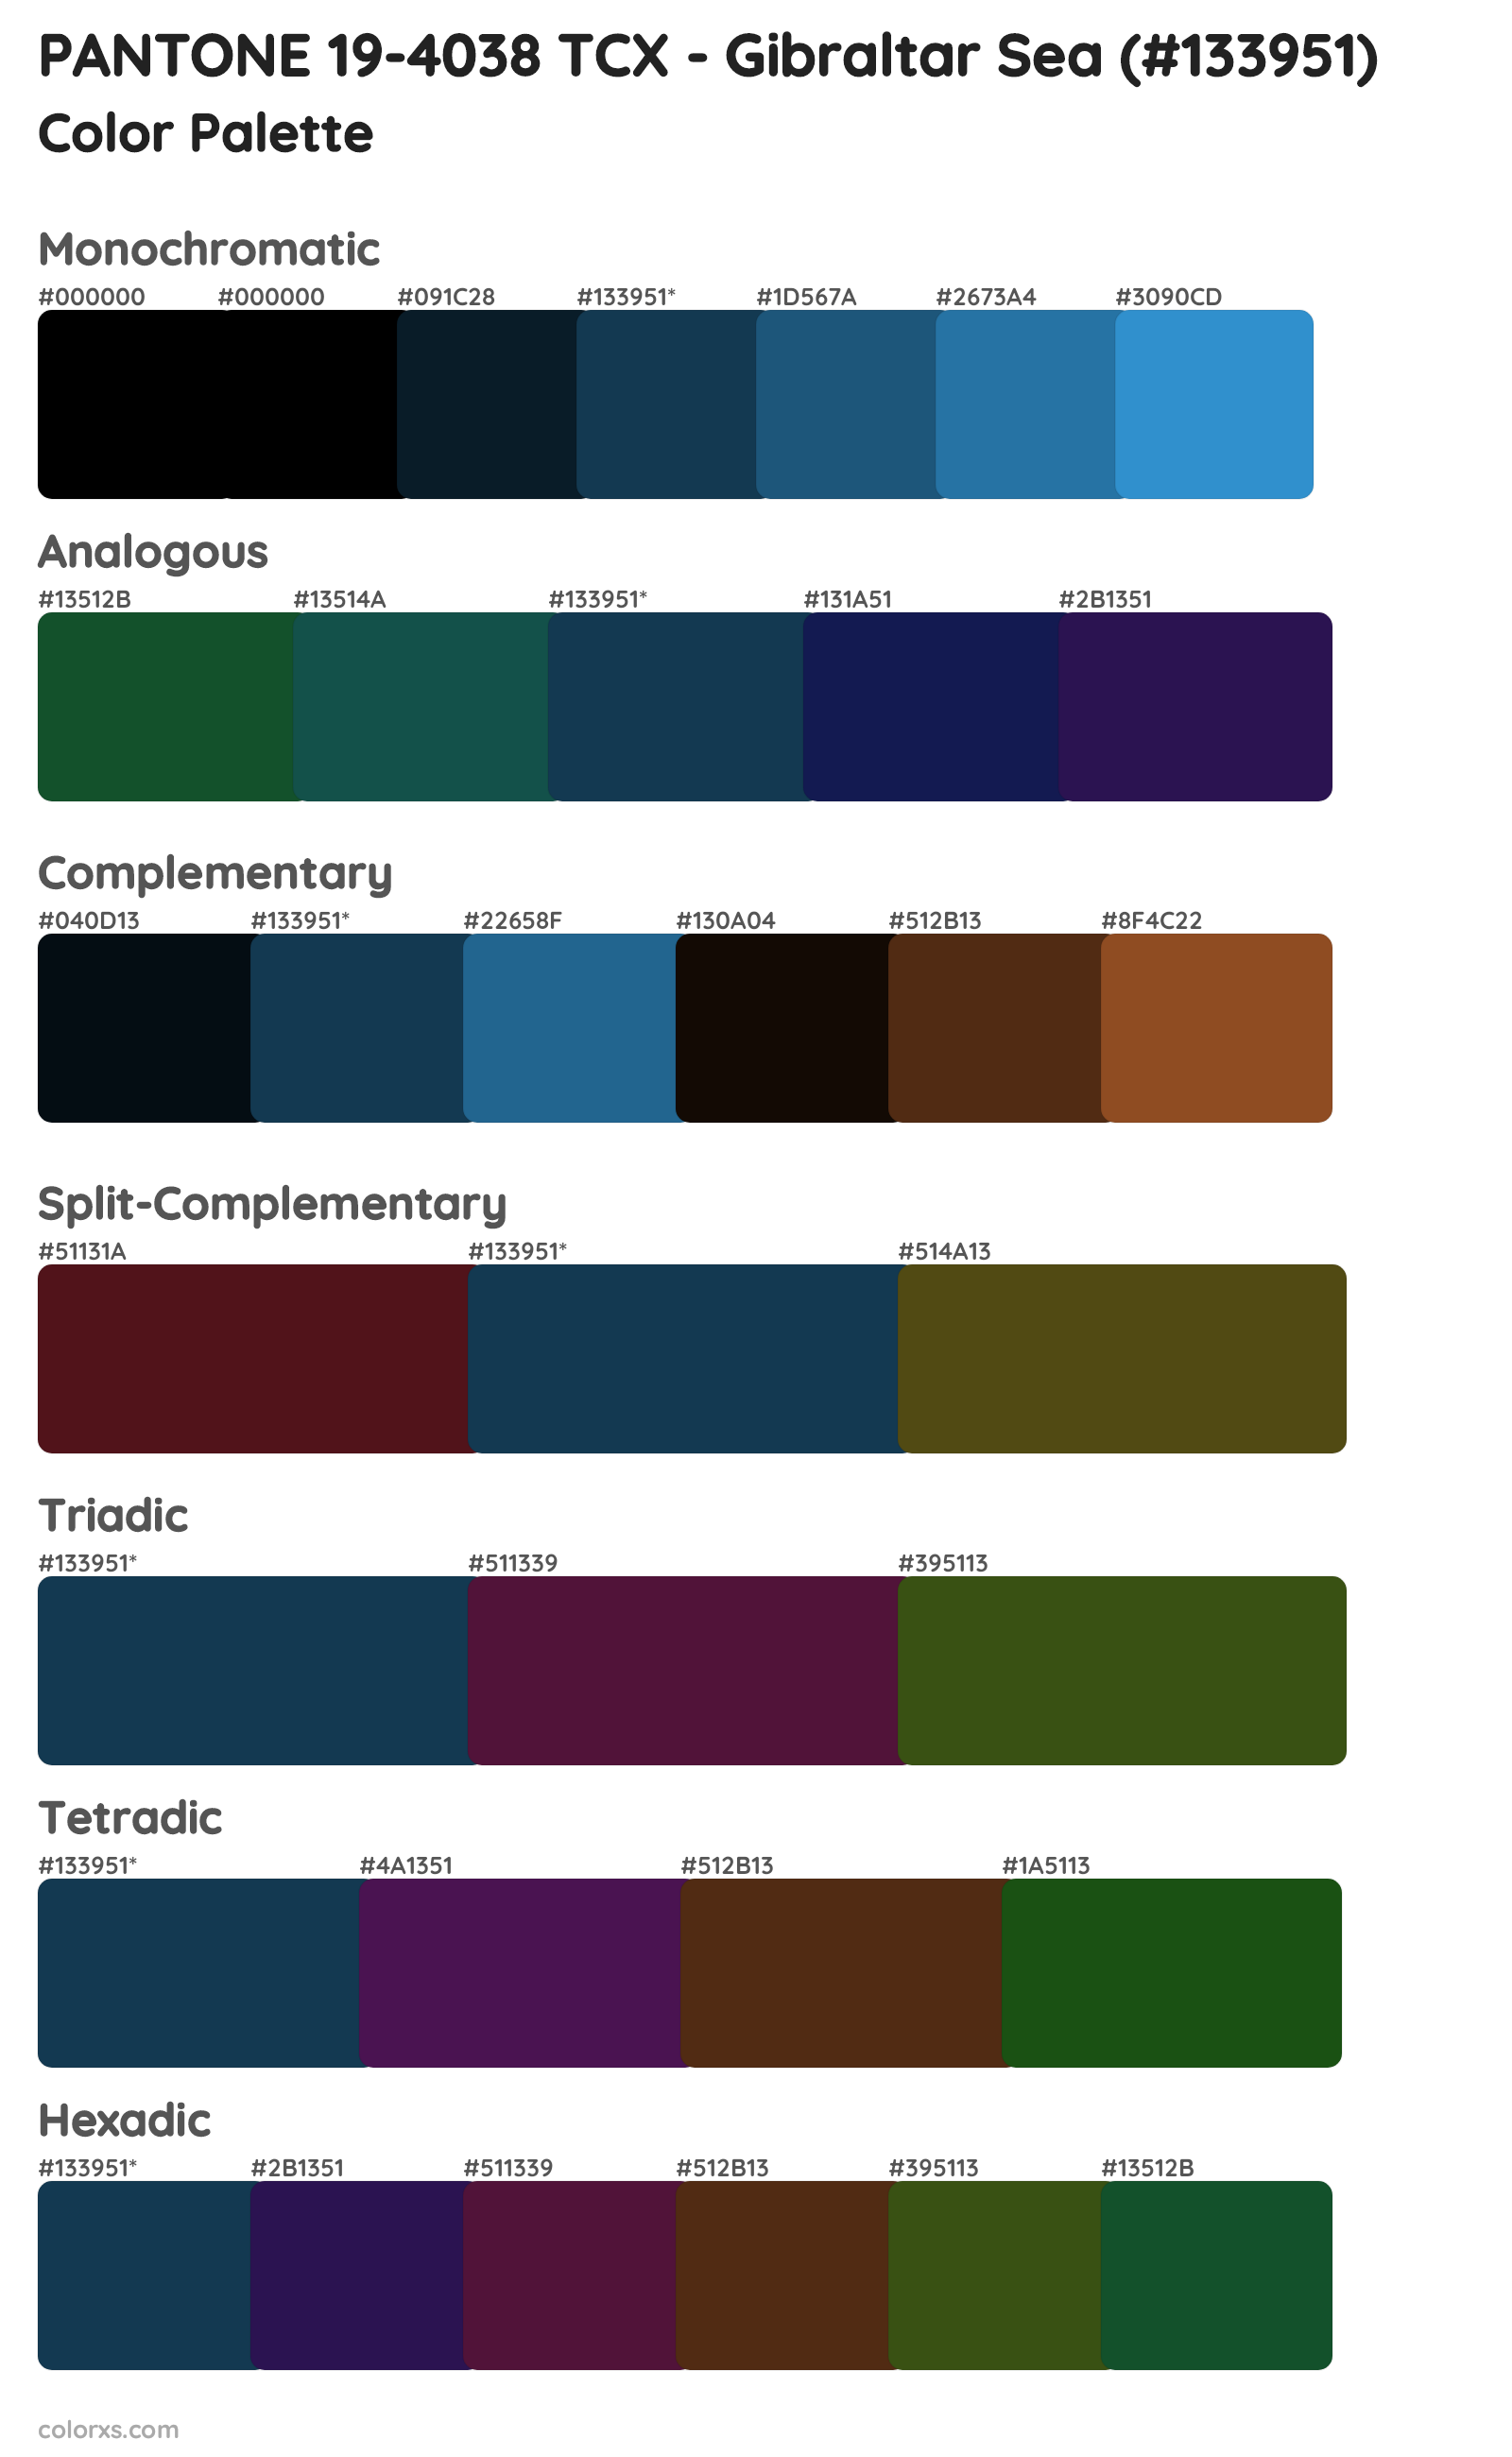 PANTONE 19-4038 TCX - Gibraltar Sea Color Scheme Palettes